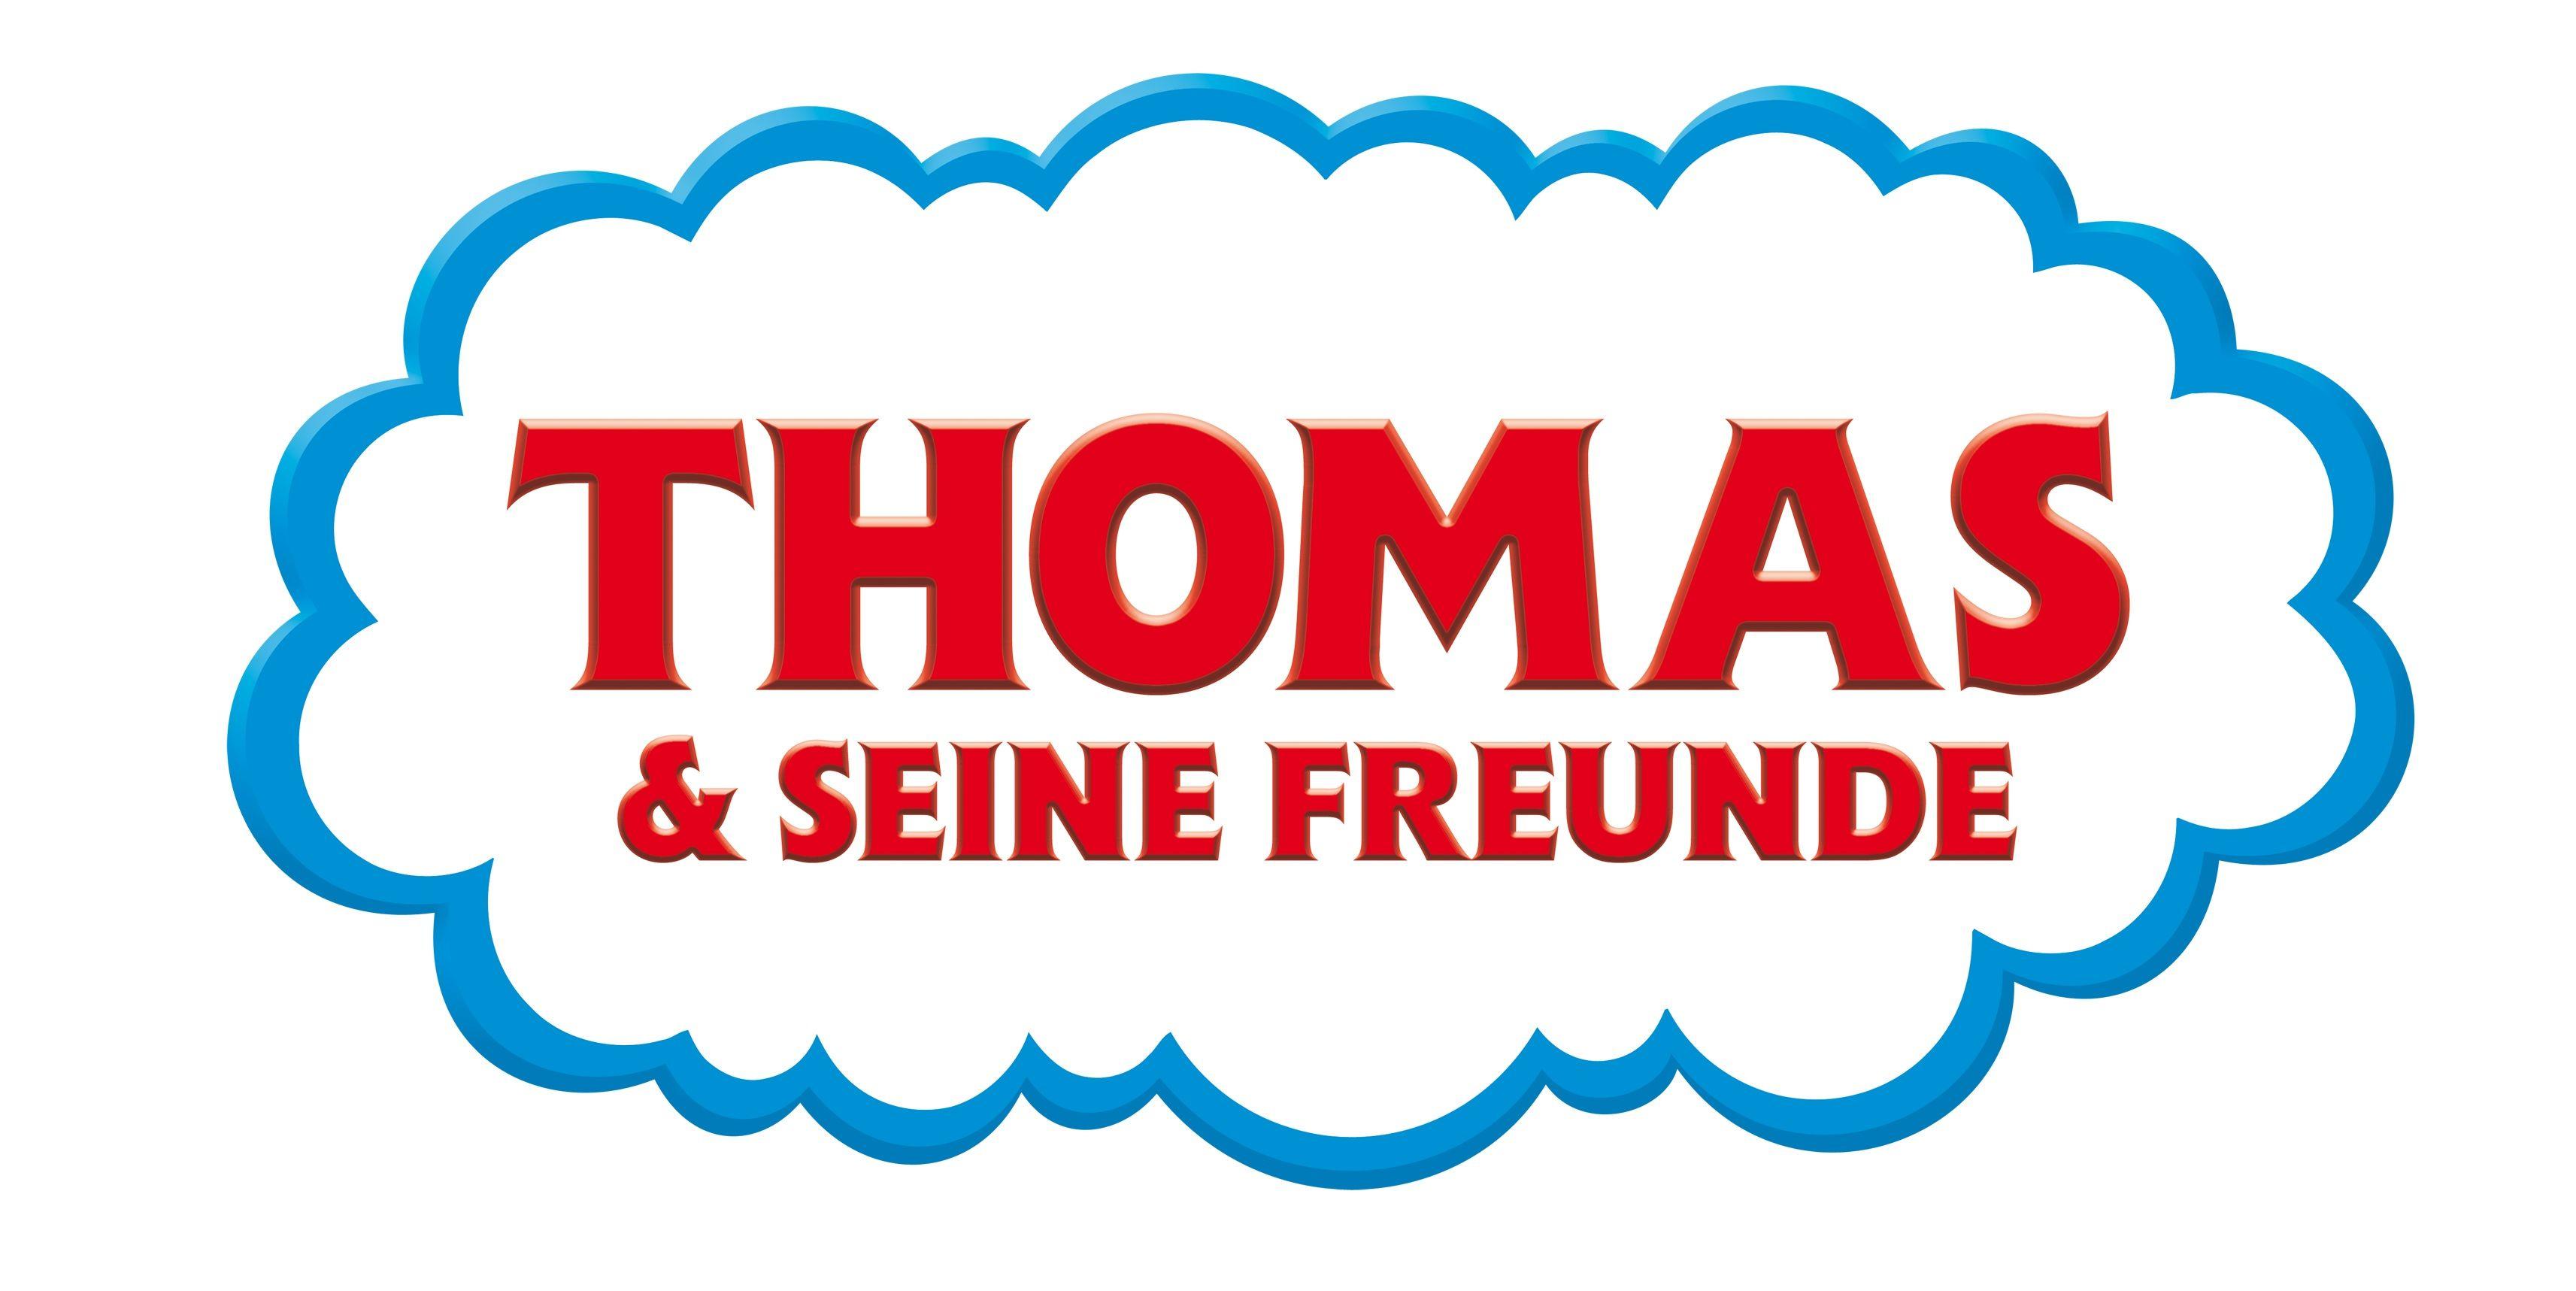 Thomas Logo - File:Thomas & seine Freunde Logo.jpg - Wikimedia Commons